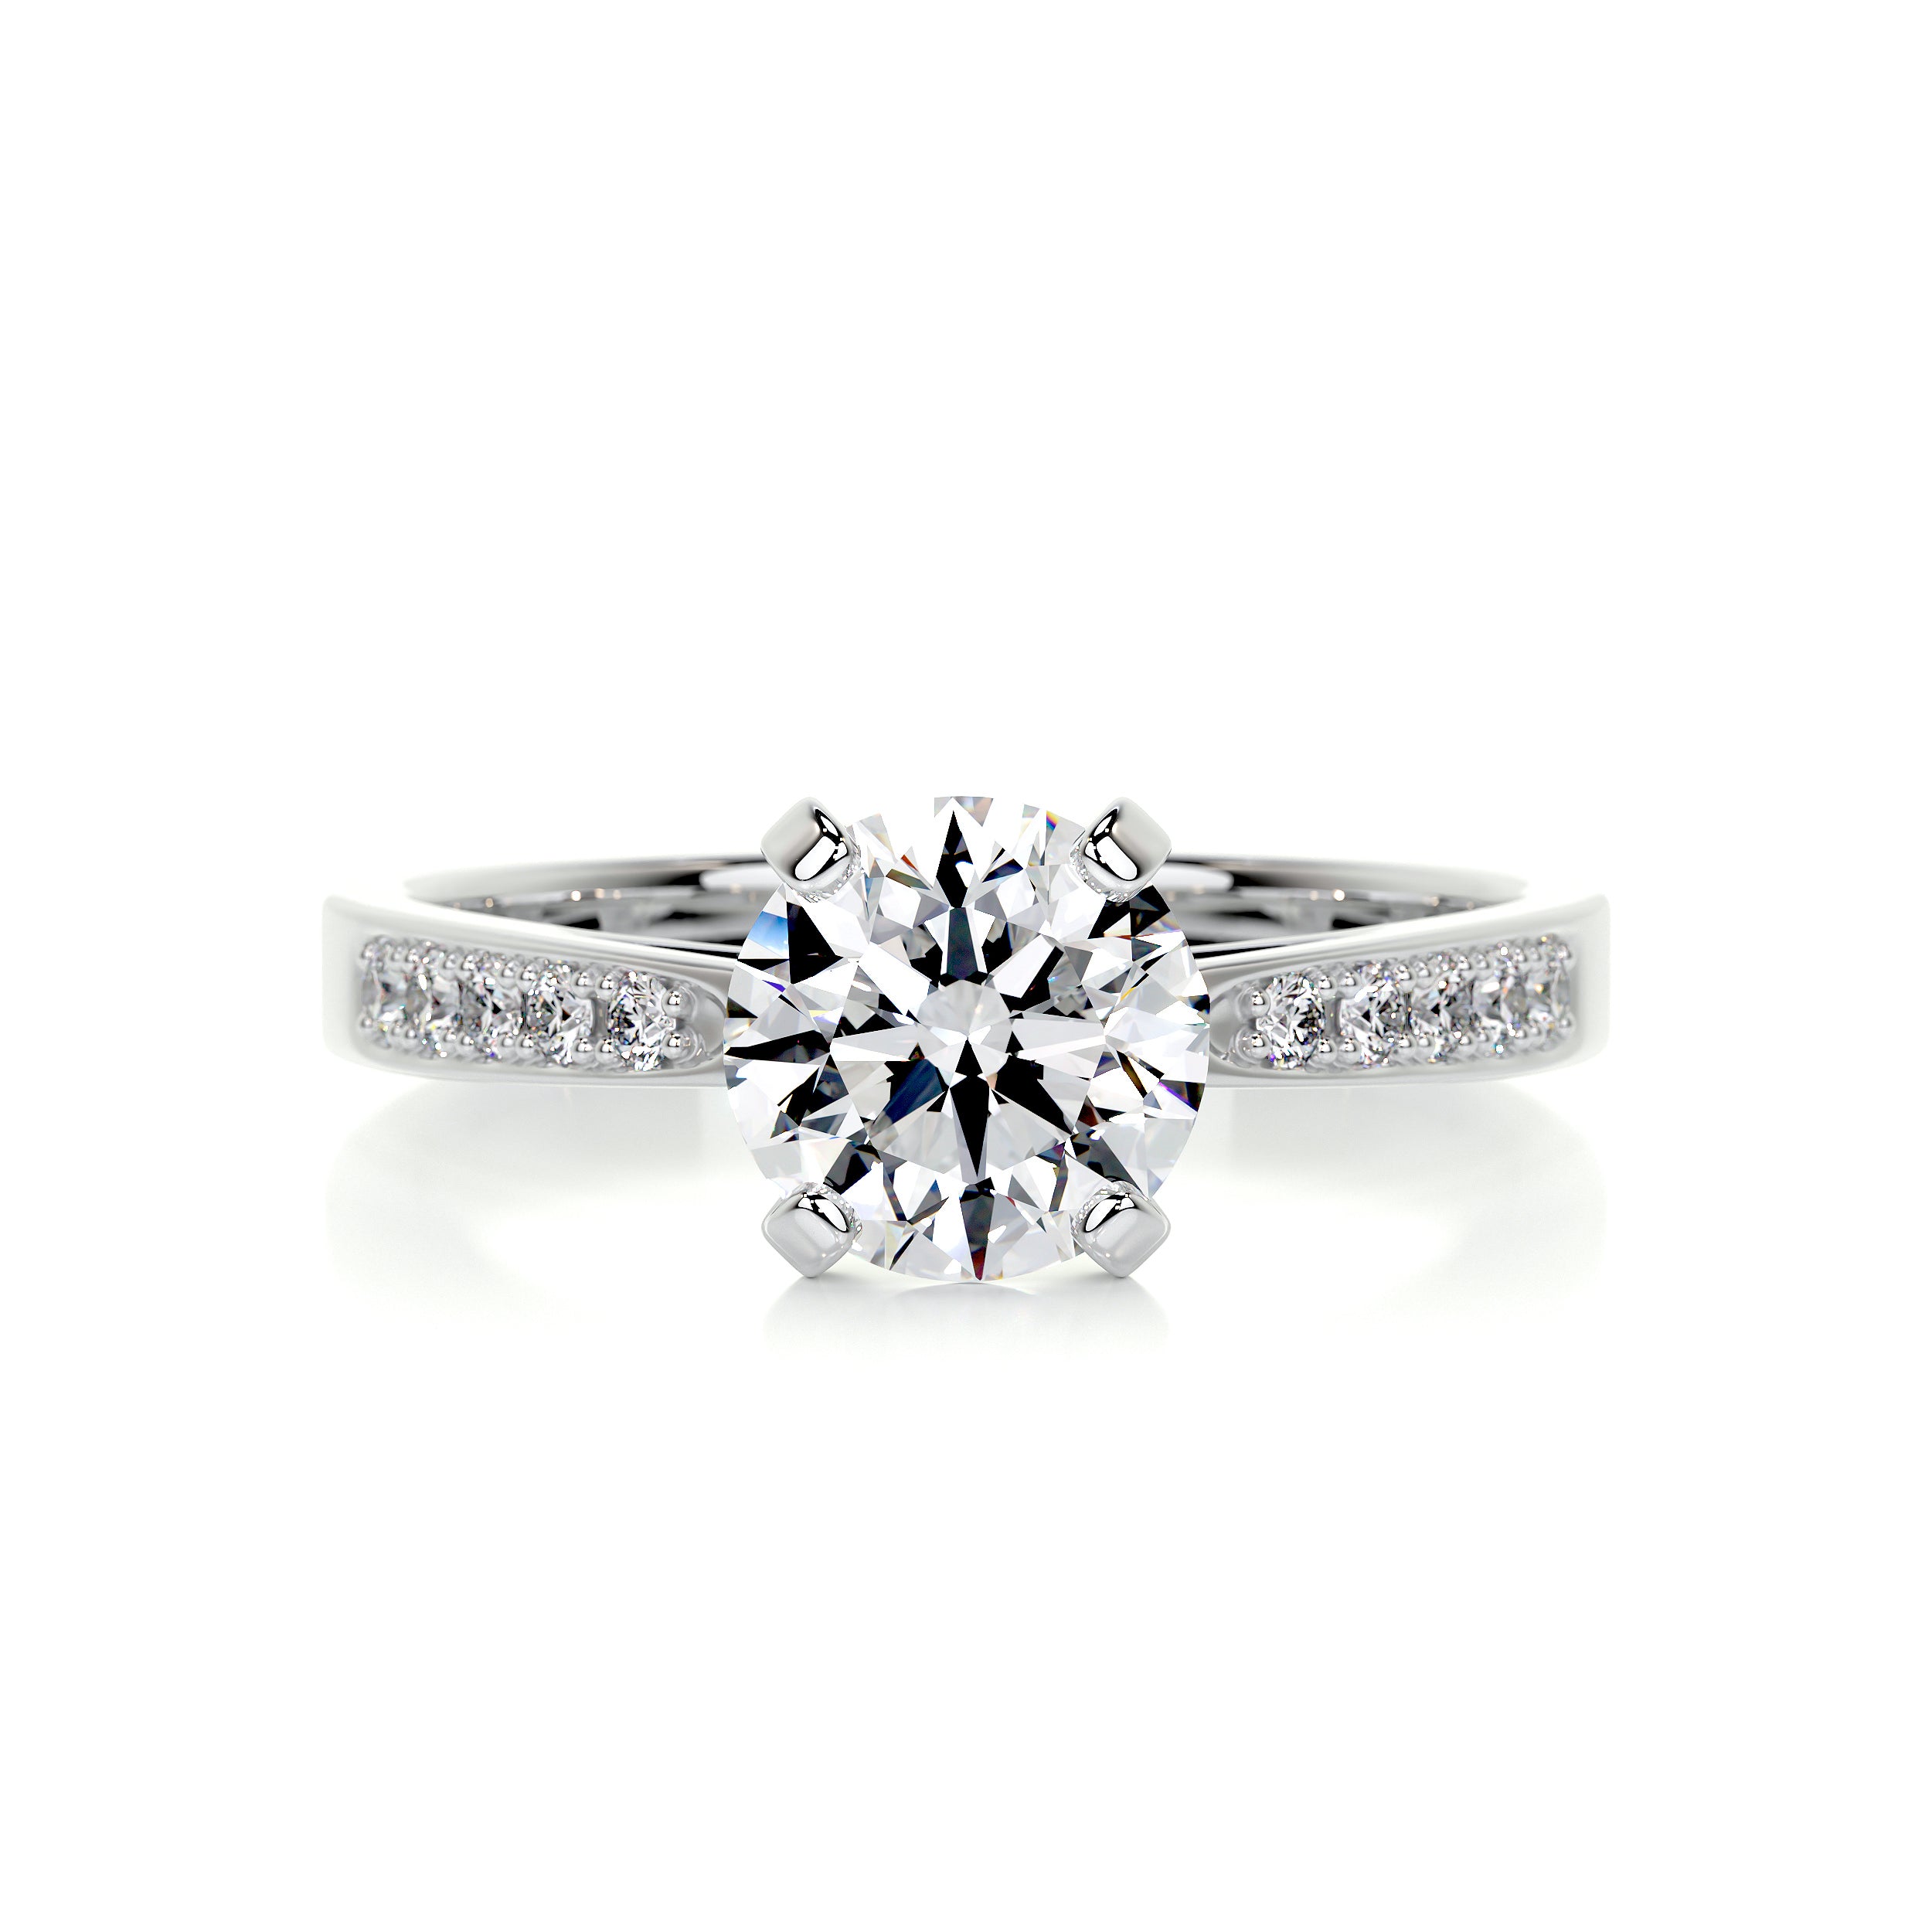 Margaret Diamond Engagement Ring   (1.35 Carat) -14K White Gold